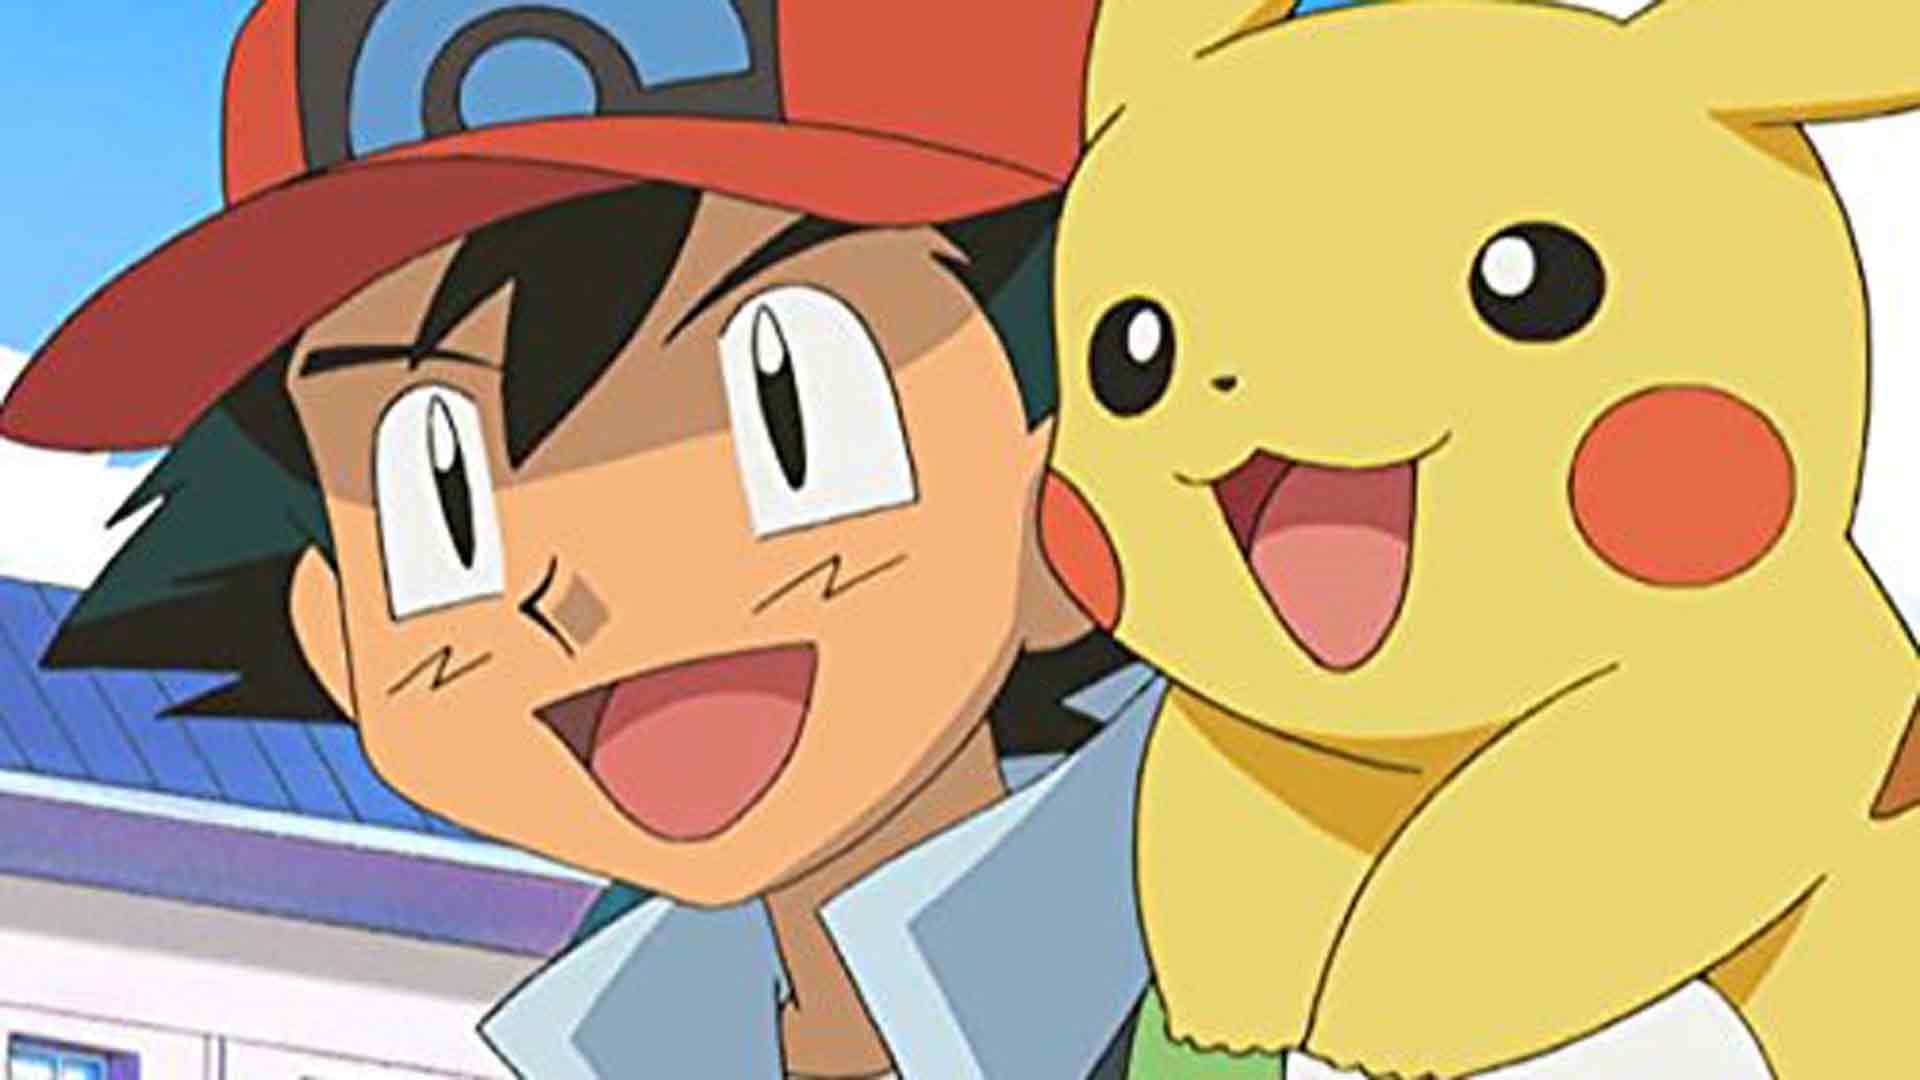 La app Pokémon Masters supera las 100.000 descargas en pocas horas